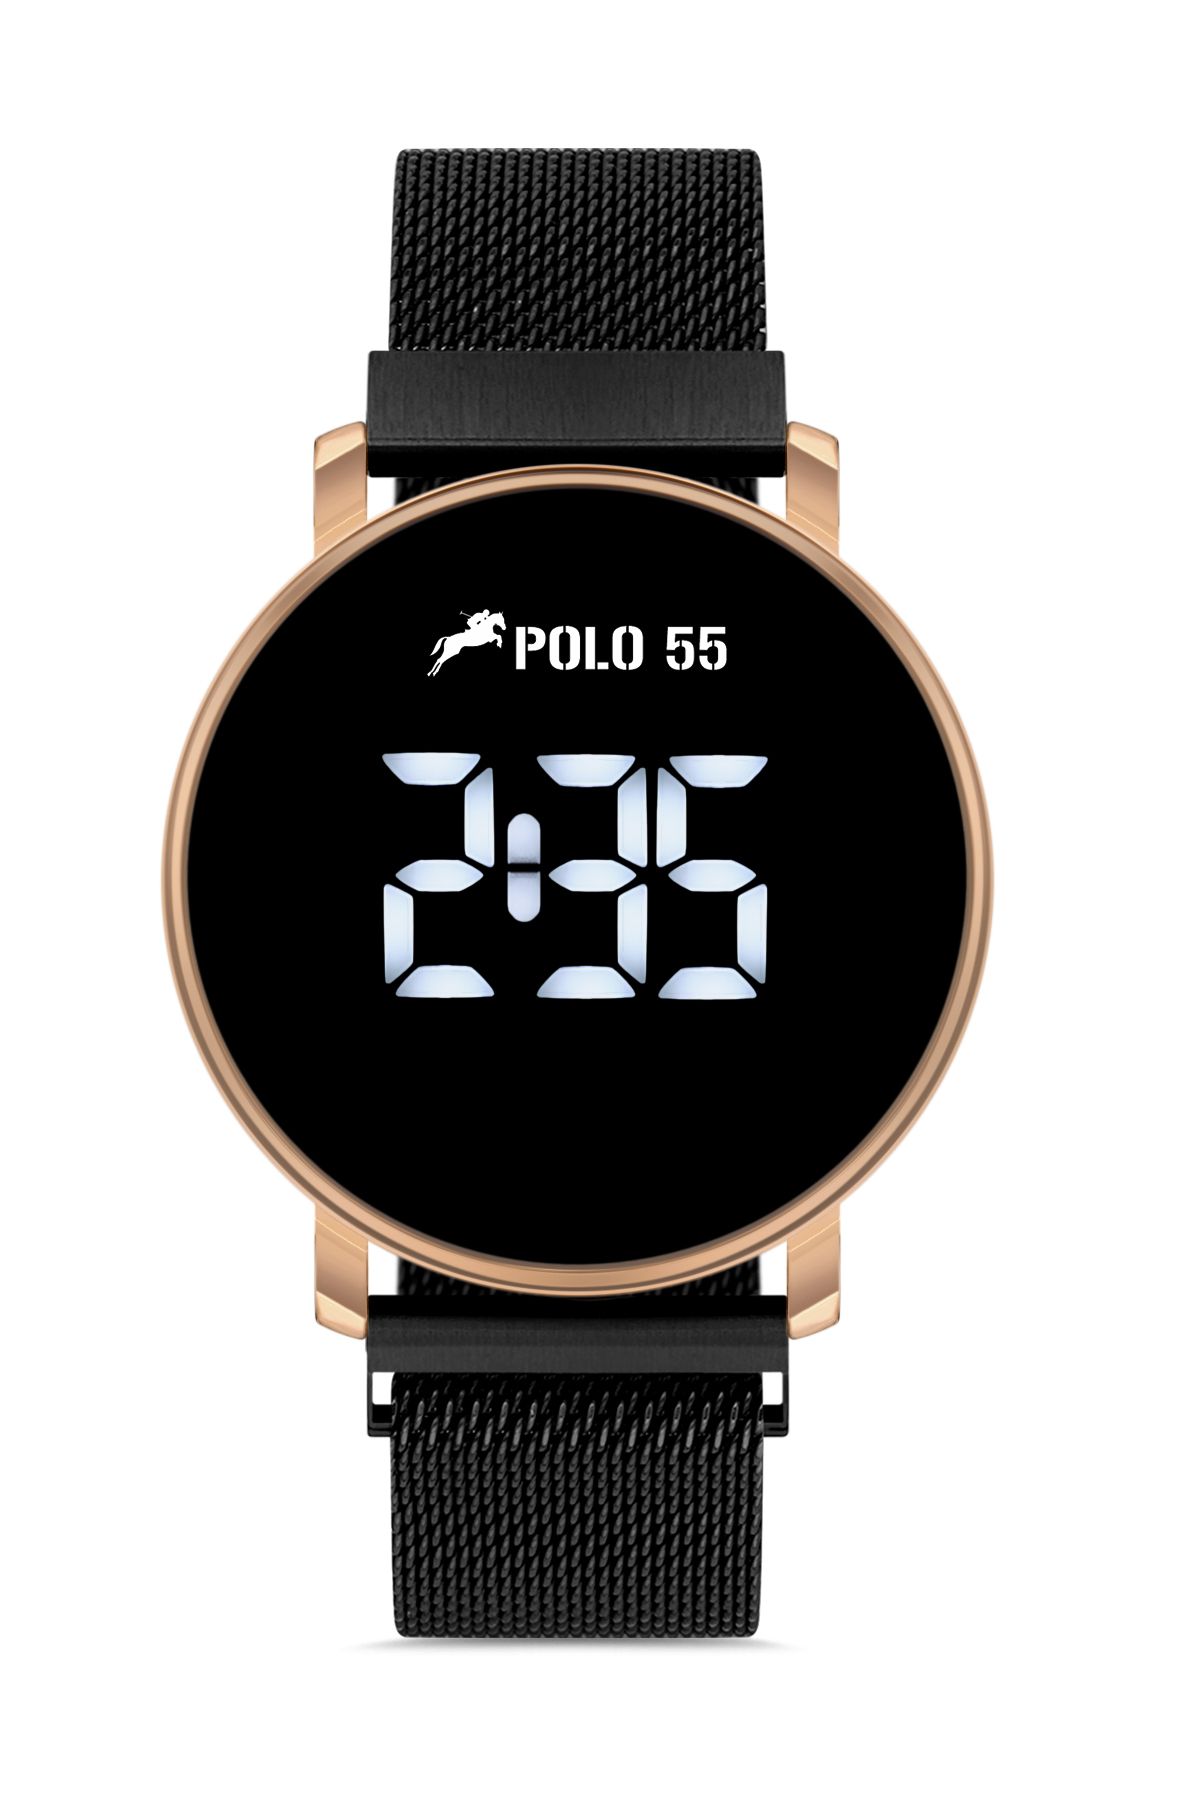 Polo55 Rose-Gold Dokunmatik Dijital Hasır Kordon Kadın Kol Saati